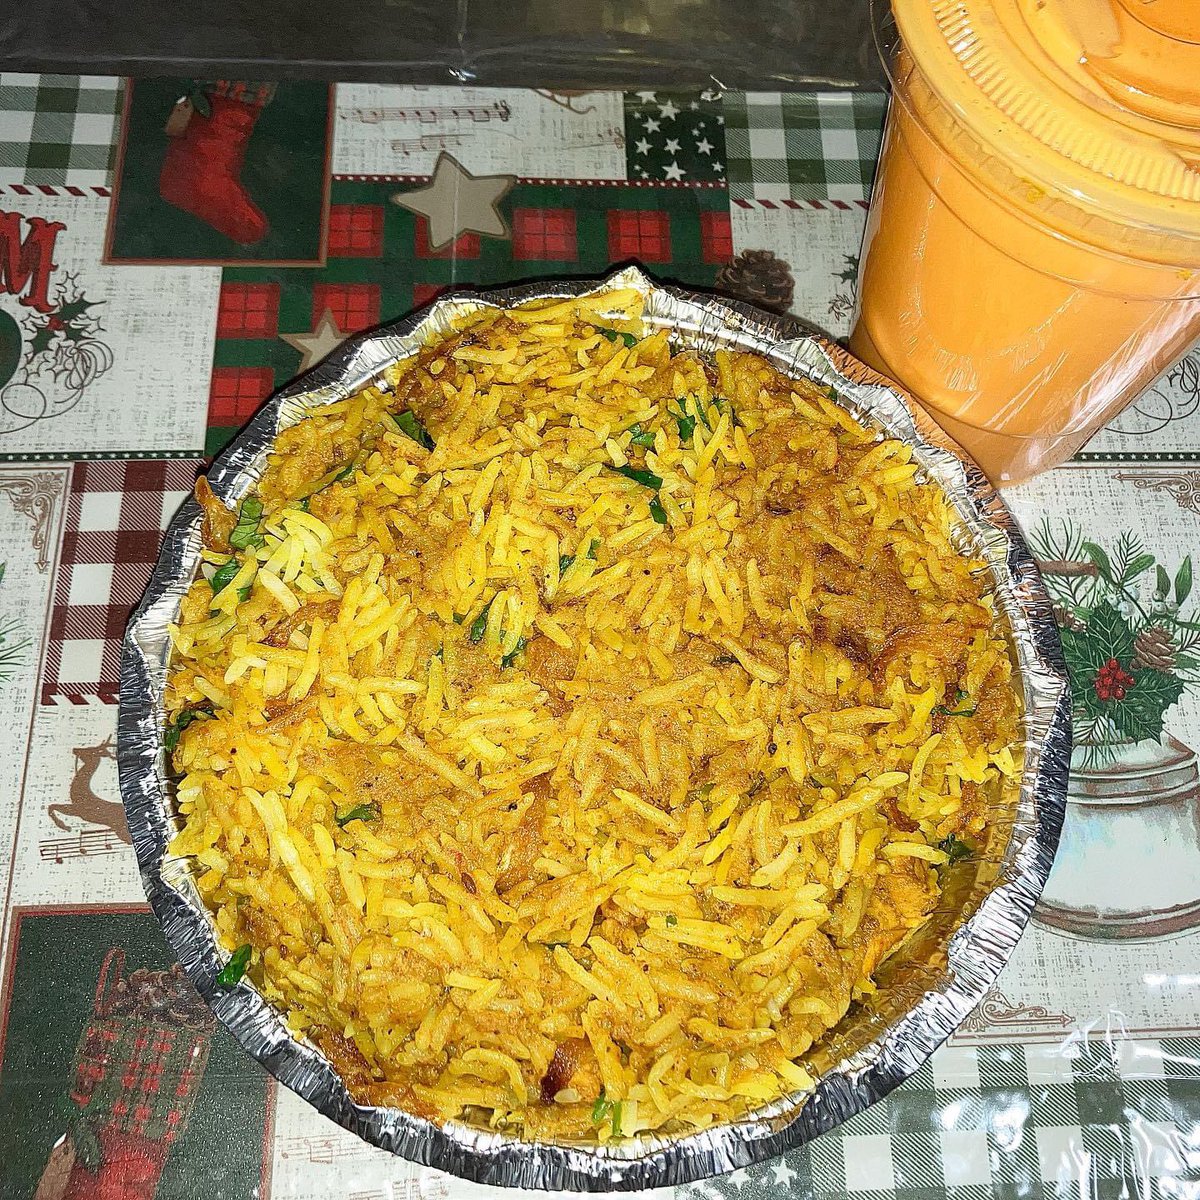 Chicken Biryani & a Mango Lassi
#ThankYouDad